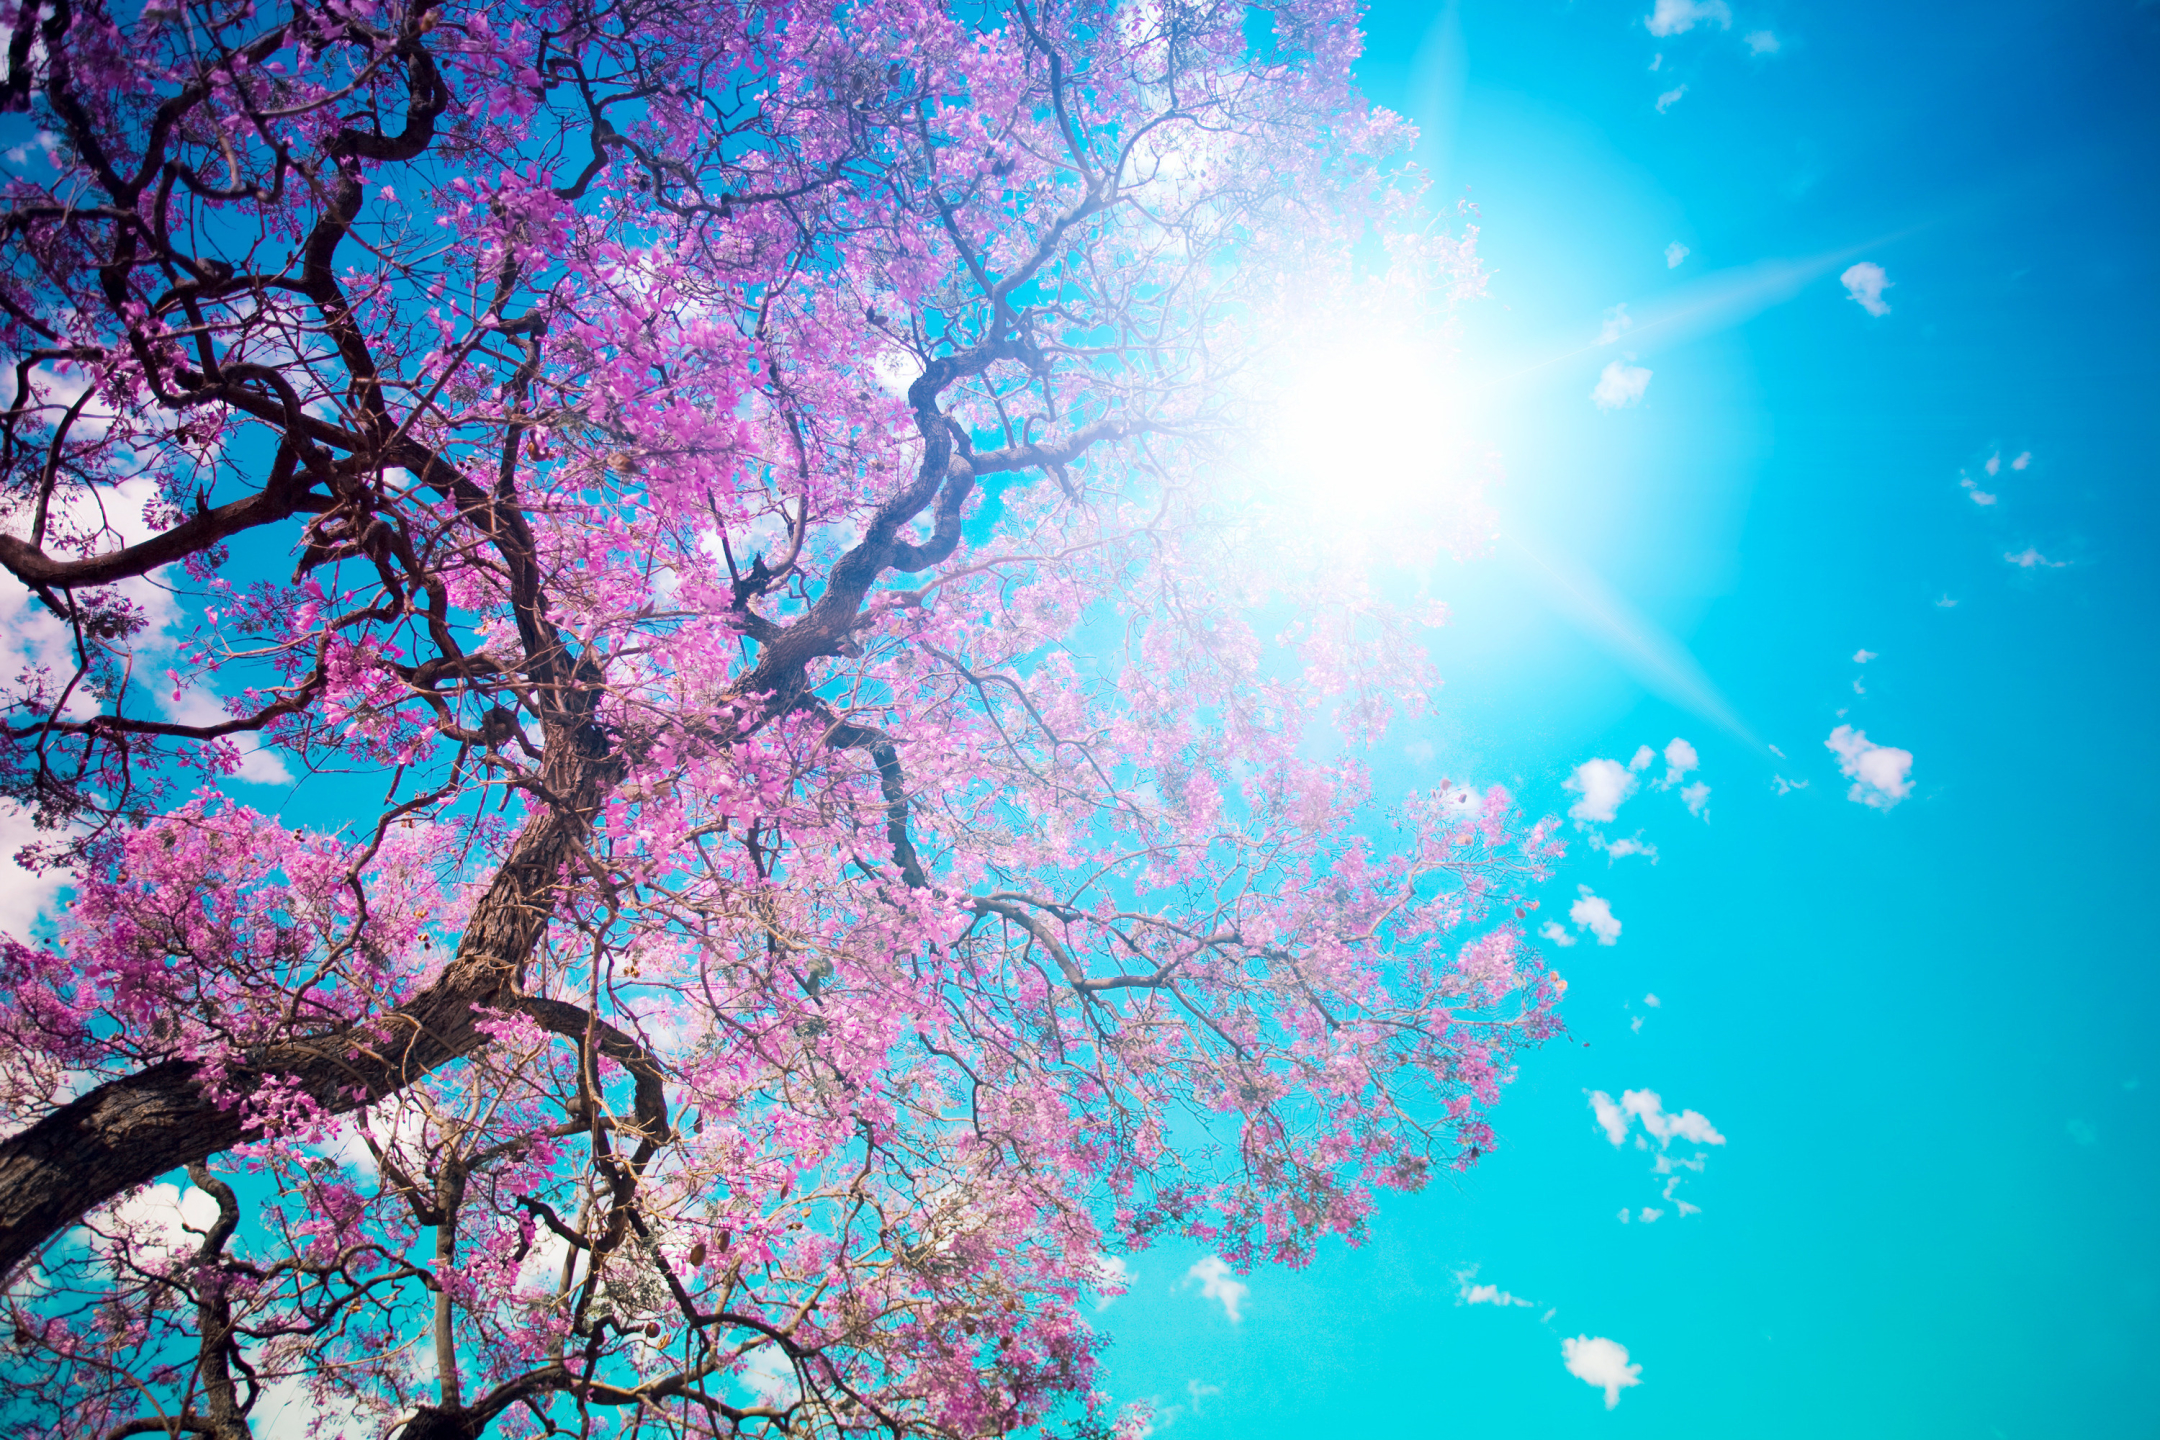 Скачать обои бесплатно Деревья, Солнце, Дерево, Весна, Земля/природа картинка на рабочий стол ПК